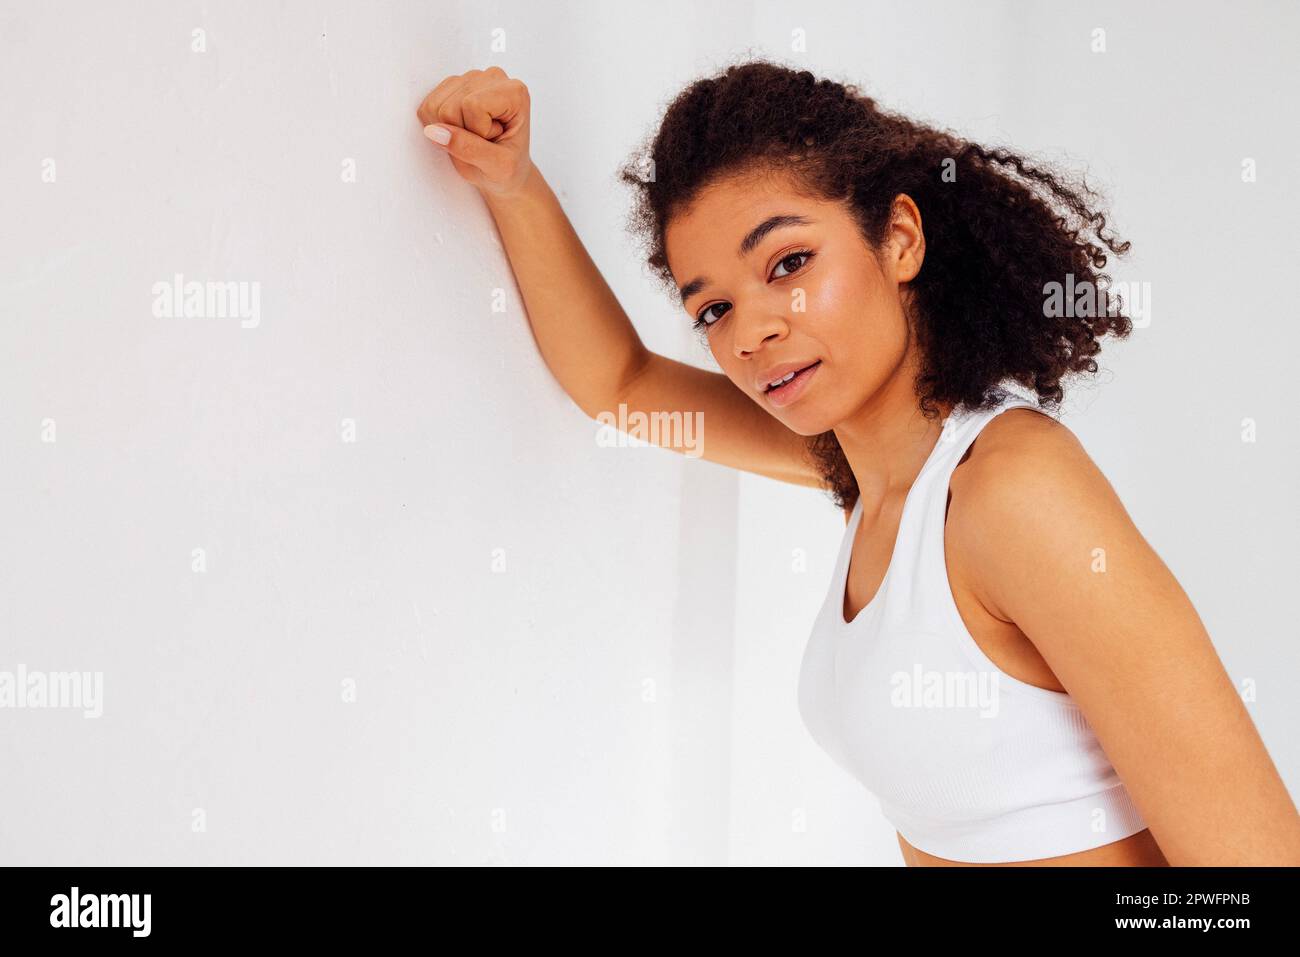 Primo piano studio ritratto di felice bella ragazza atletica di etnia africana in bianco top e leggings. Donna in forma sorridente in abbigliamento sportivo su bac bianco Foto Stock